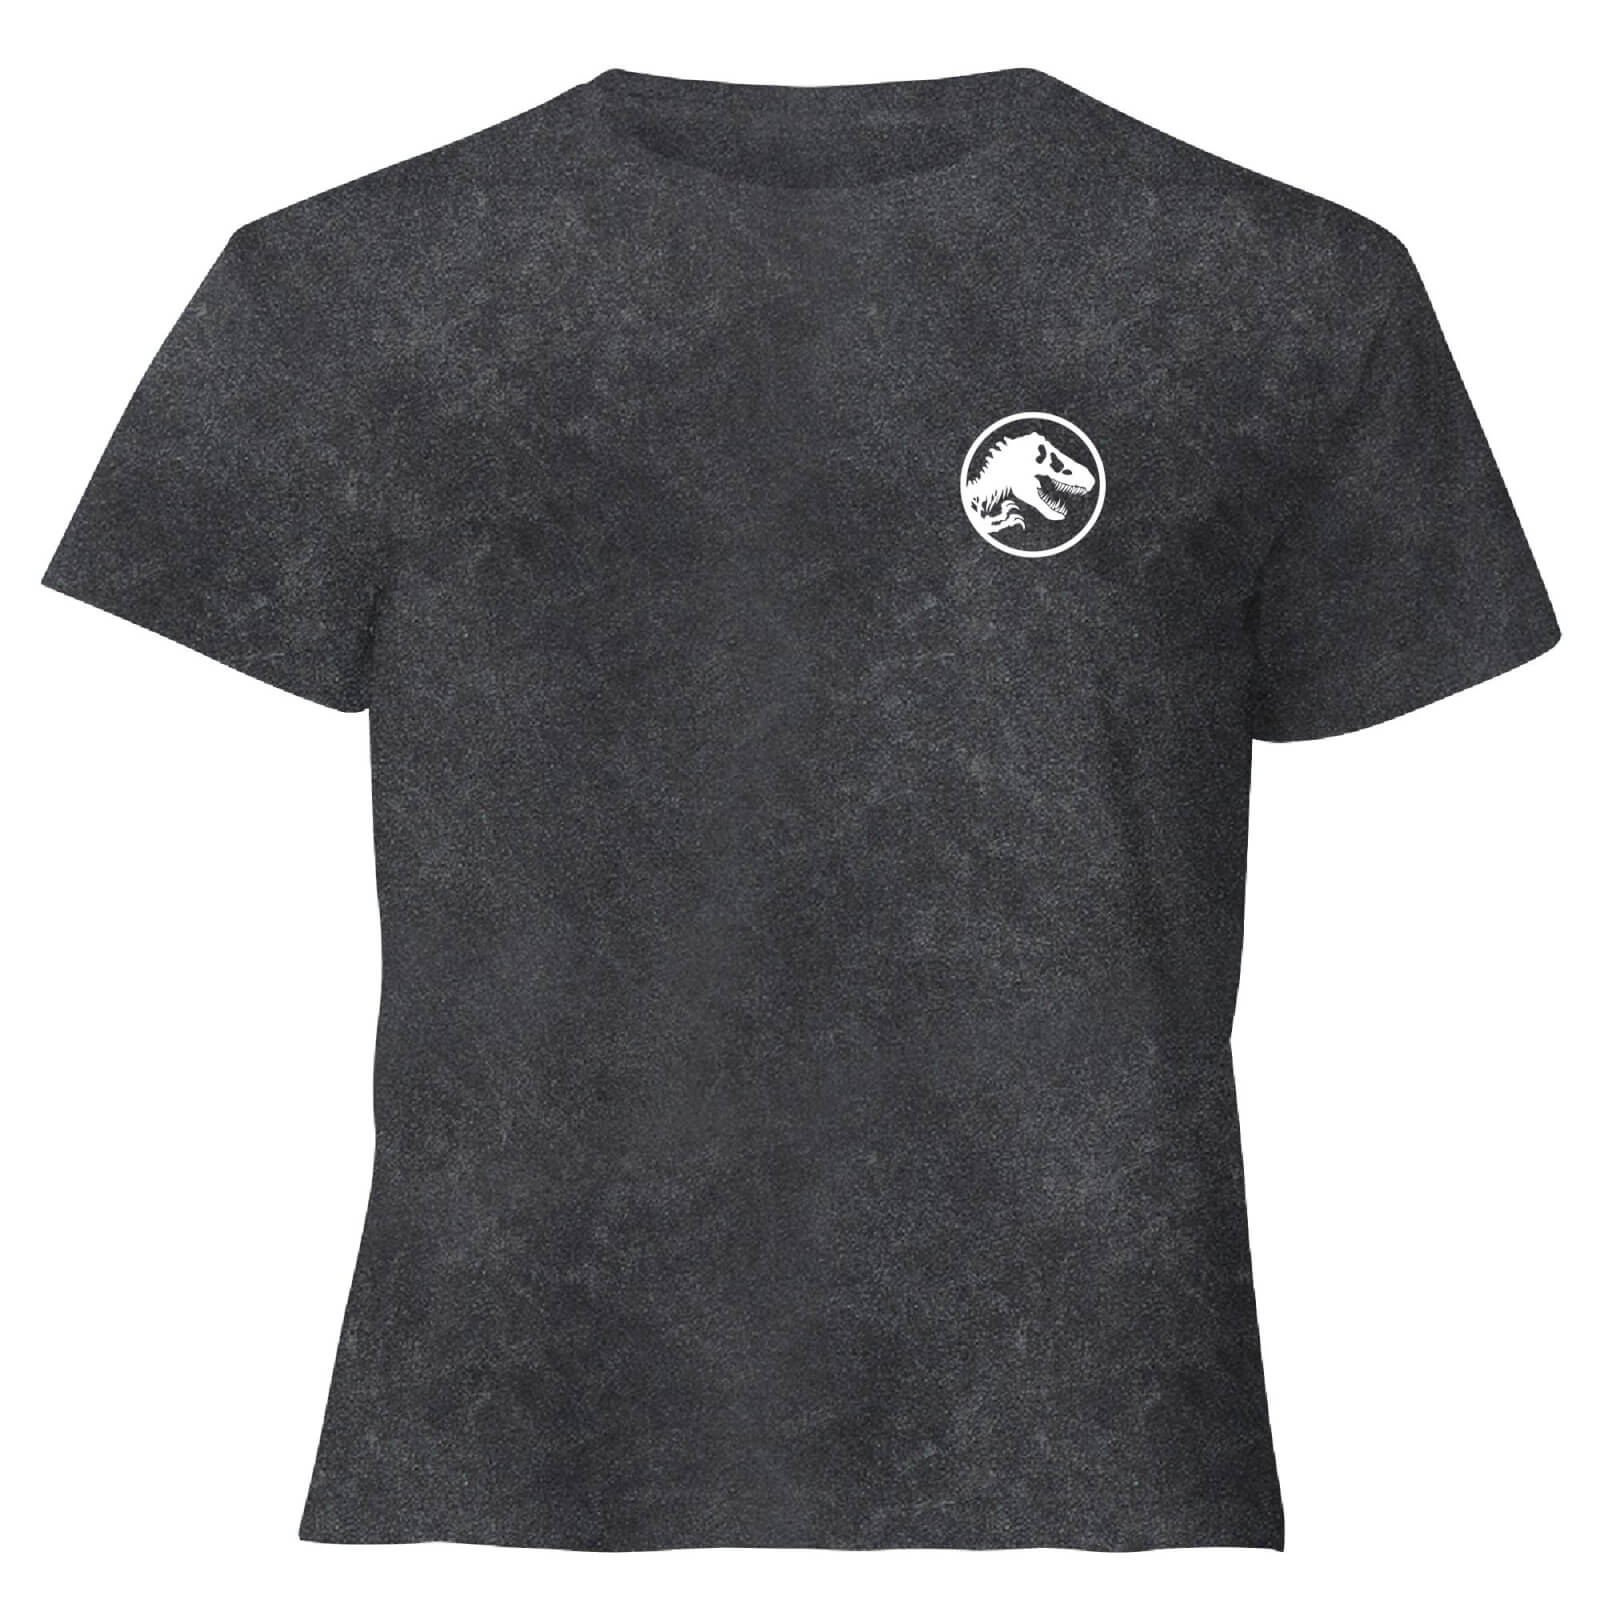 Image of Jurassic Park Primal Limited Variant Ranger Logo - Women's Cropped T-Shirt - Black Acid Wash - L - Black Acid Wash